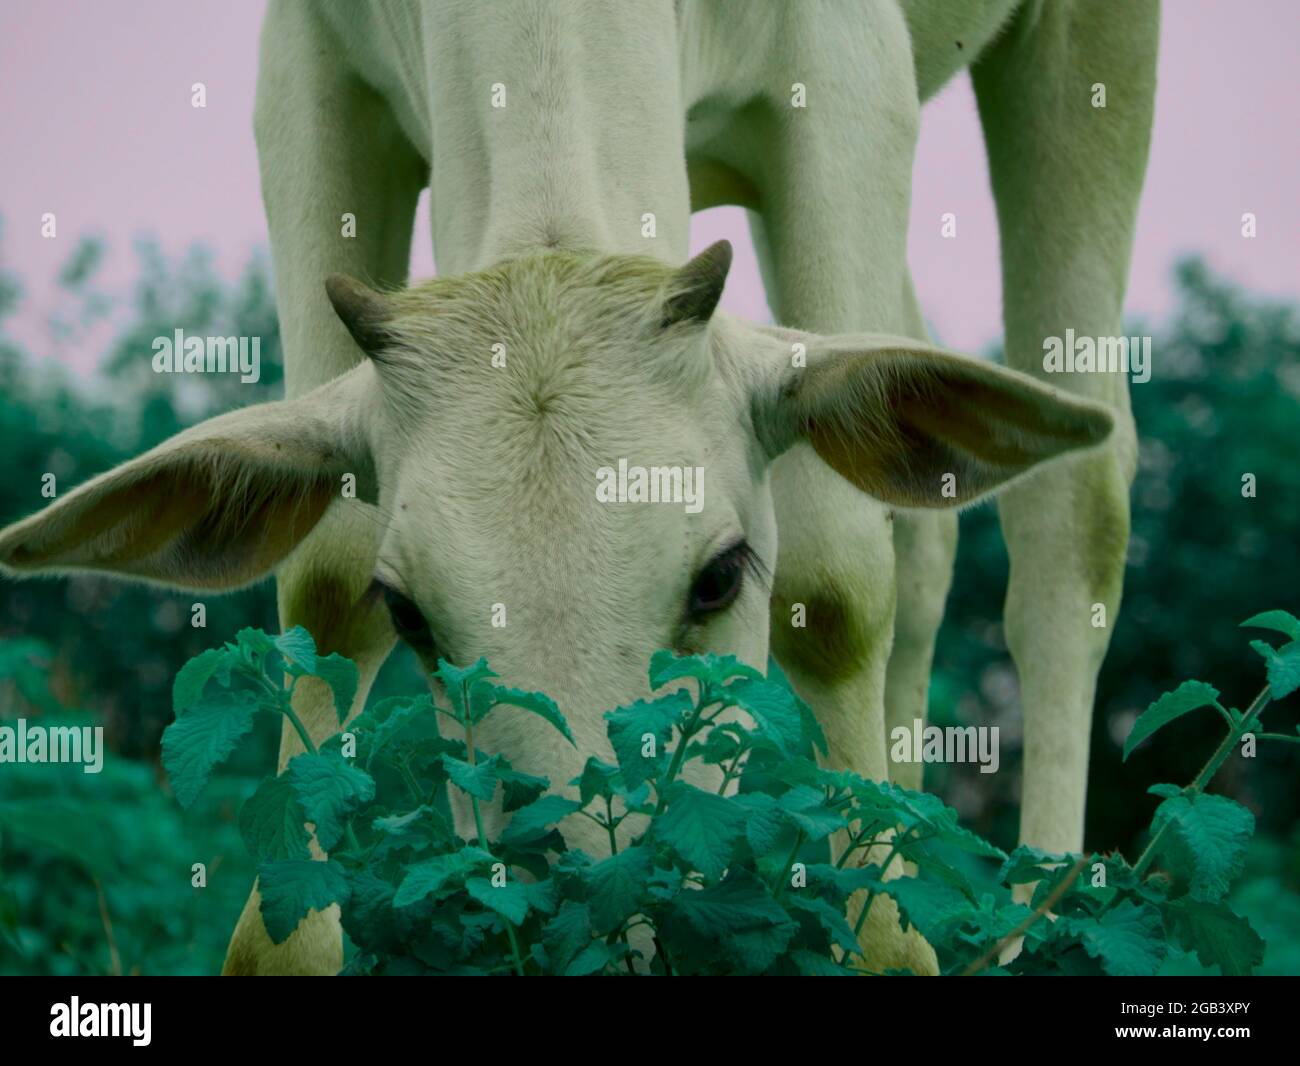 Vache debout derrière des feuilles vertes plante nature aimant animal image concept. Banque D'Images